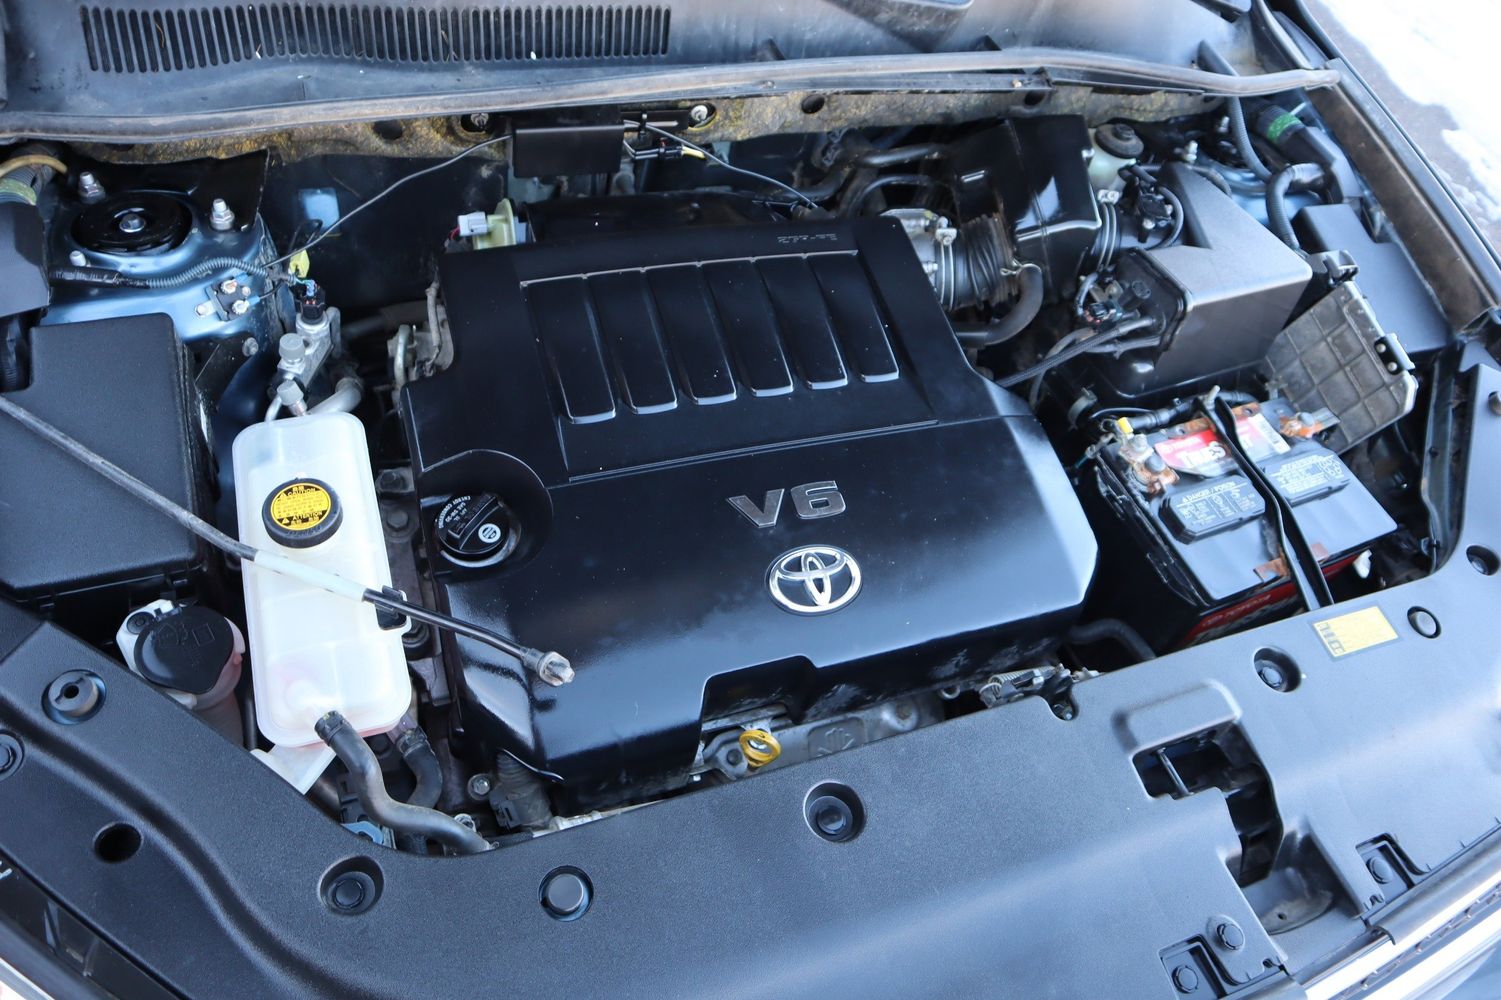 2010 Toyota RAV4 Limited | Victory Motors of Colorado 2010 Toyota Rav4 Engine 3.5 L V6